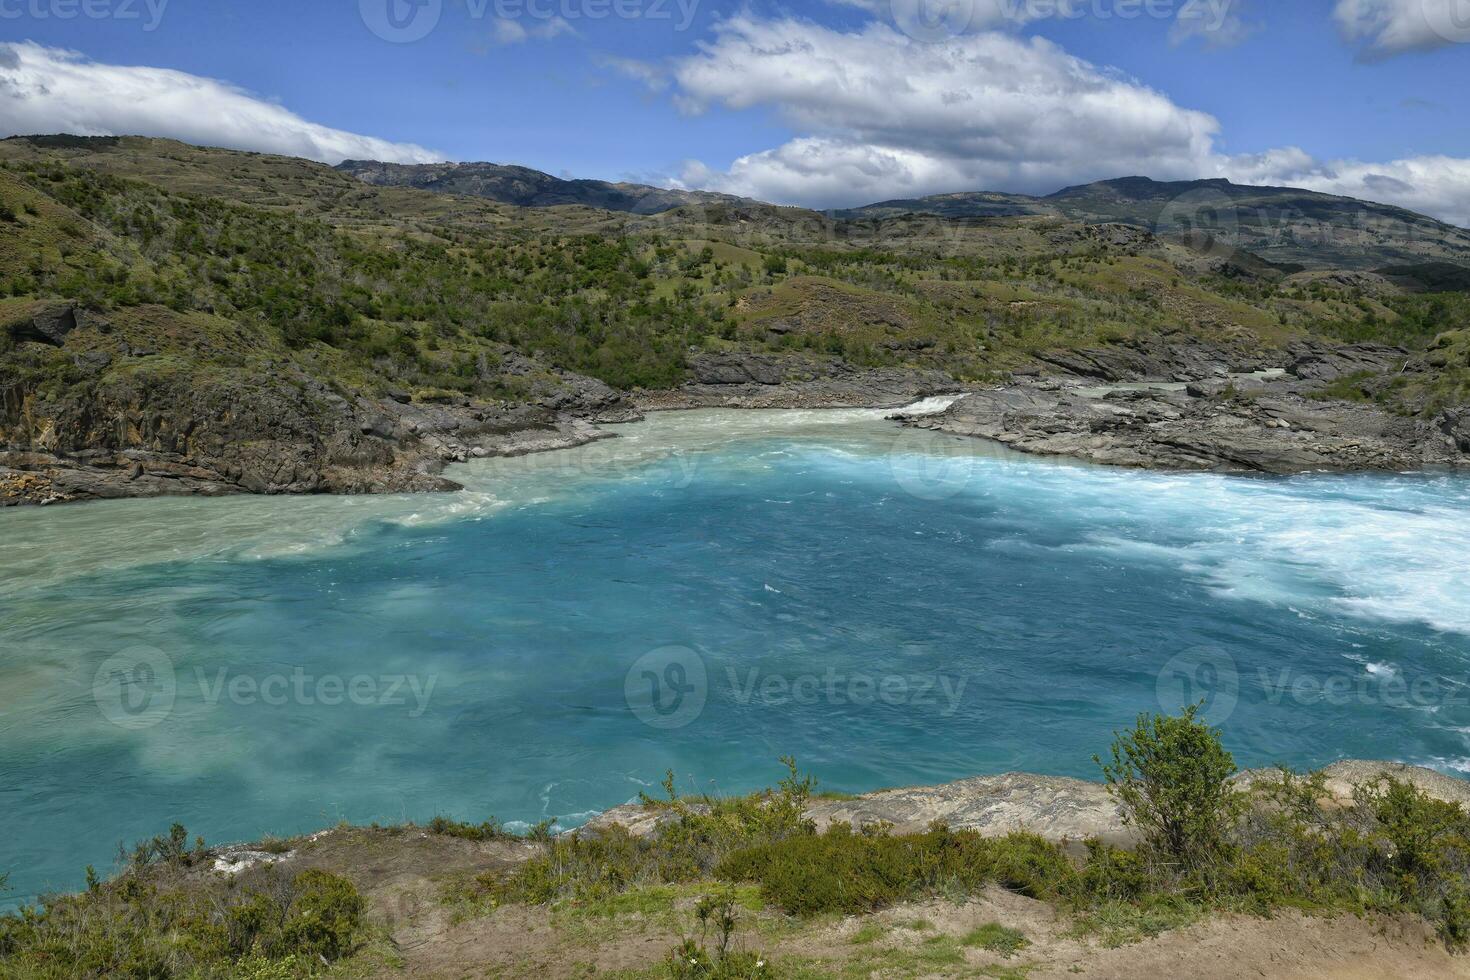 fors på de sammanflöde av blå bagare flod och grå neff flod, pan-amerikansk motorväg mellan cochrane och puerto guadal, aysen område, patagonien, chile foto